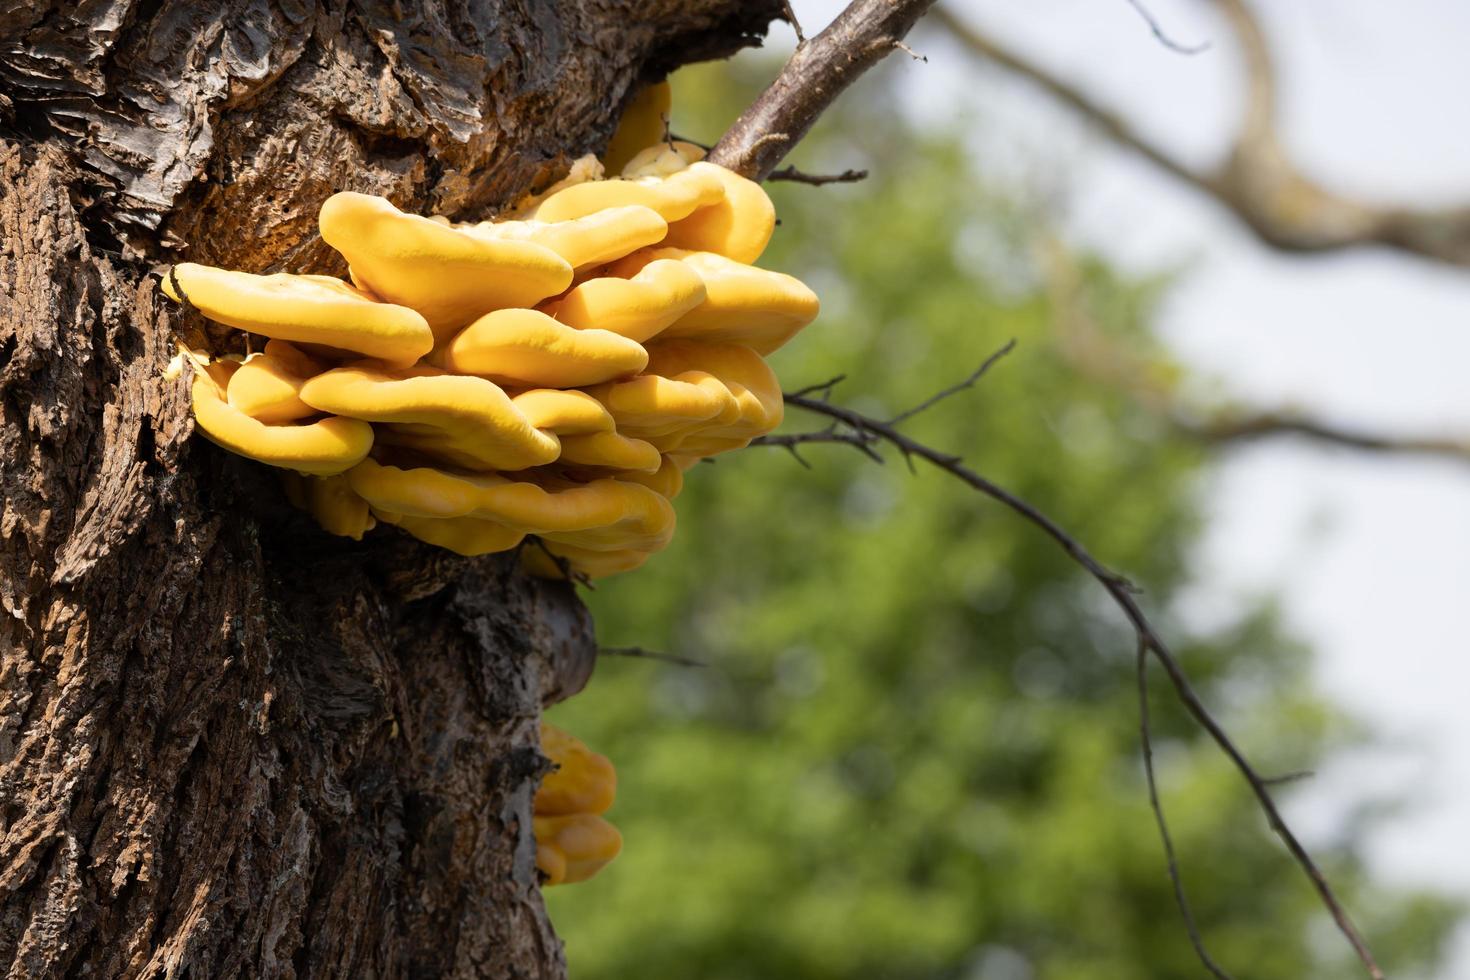 Laetiporus Sulphureus Bracket Fungus growing on a tree in springtime photo